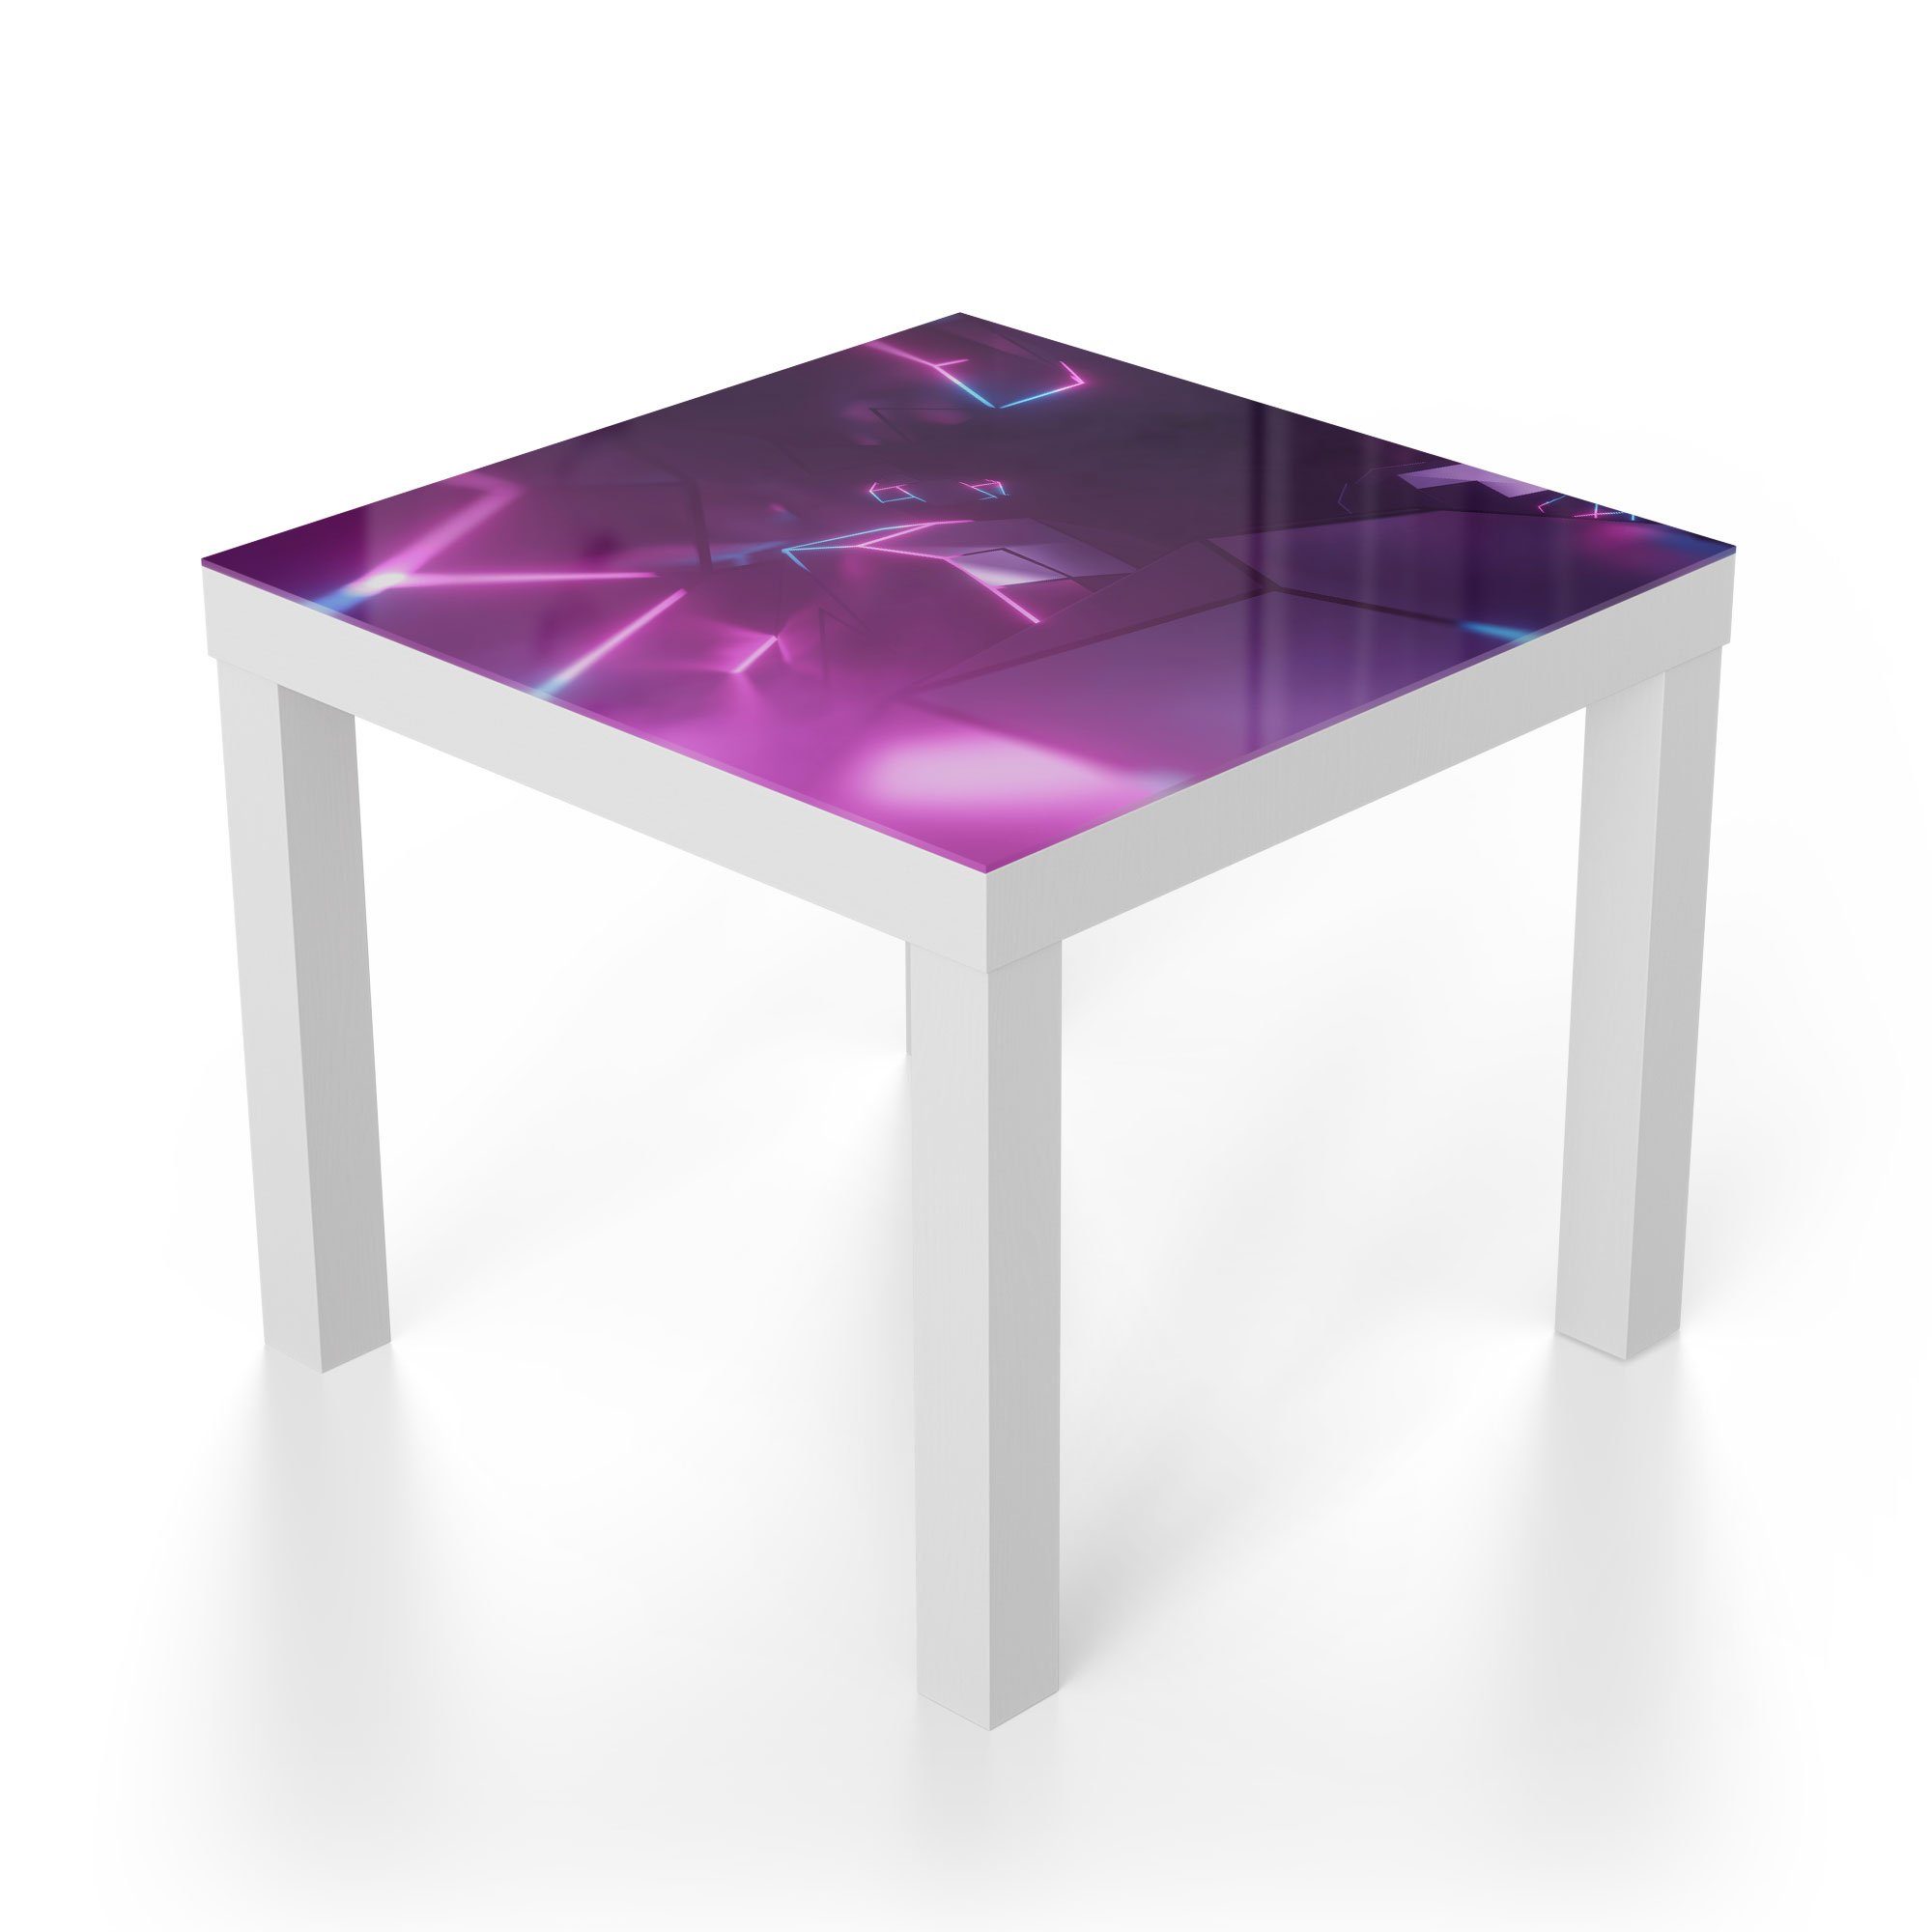 Leuchtdesign', 'Virtuelles Weiß Beistelltisch Glastisch modern Glas DEQORI Couchtisch